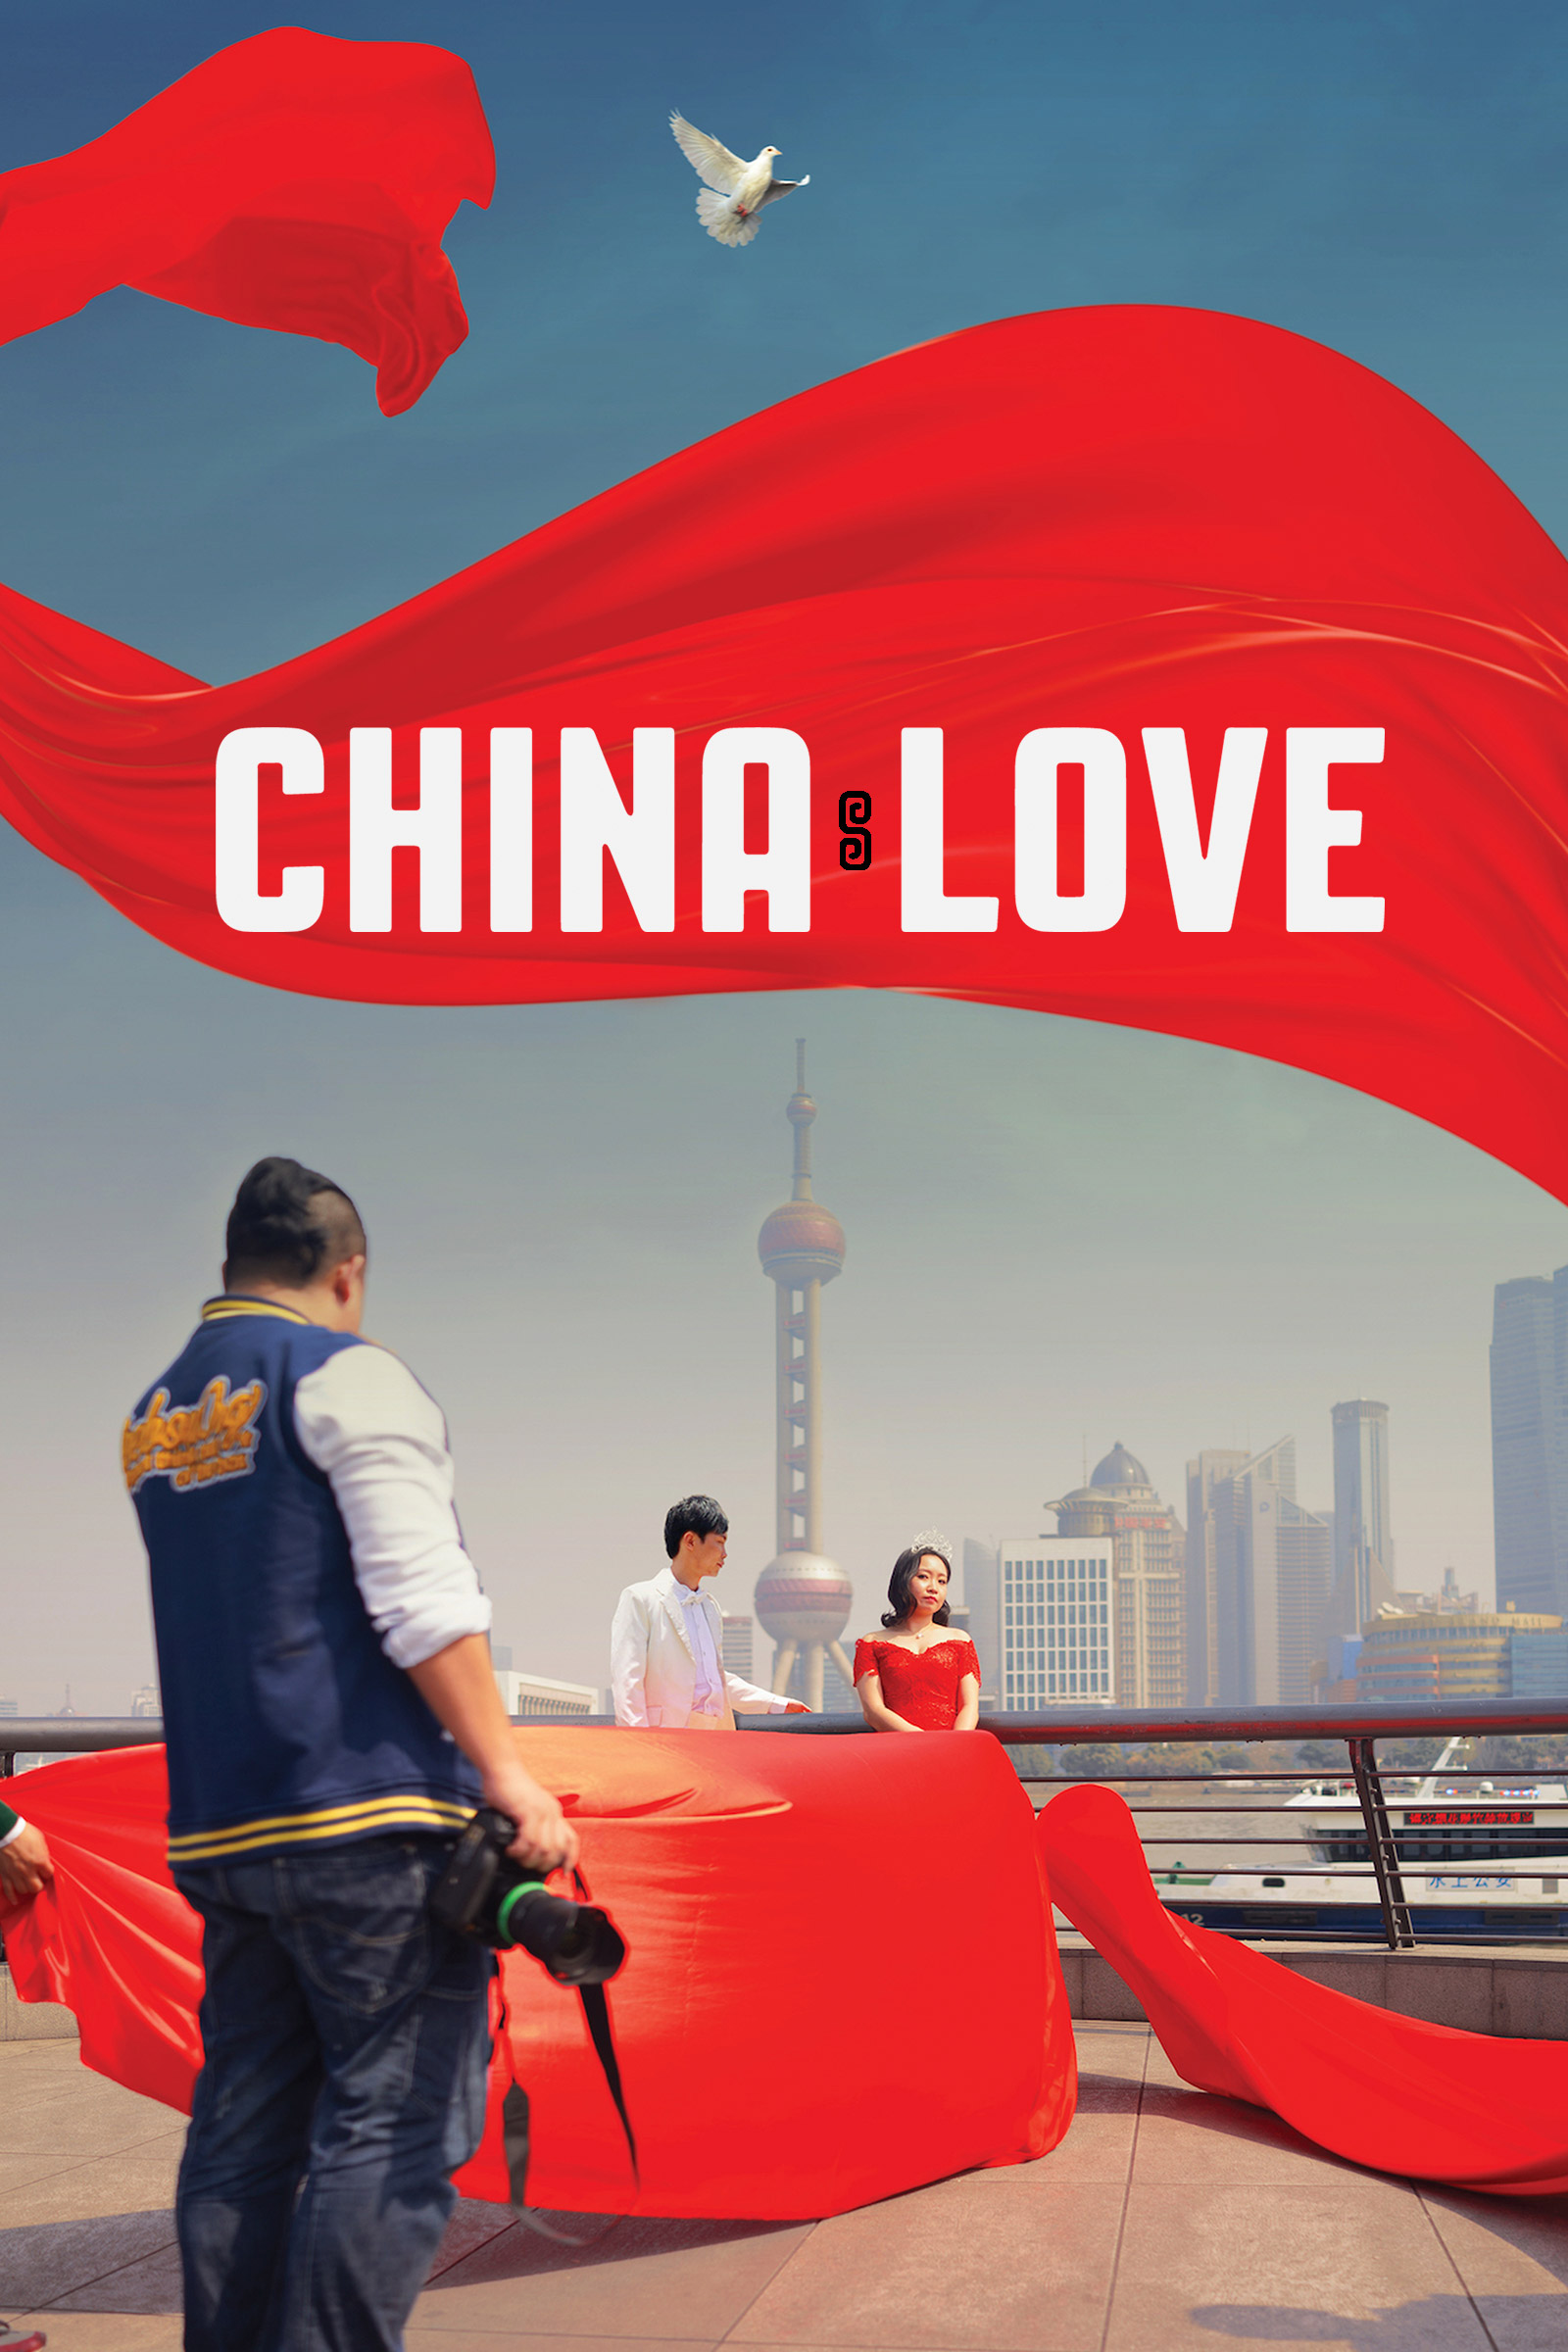 Where to stream China Love